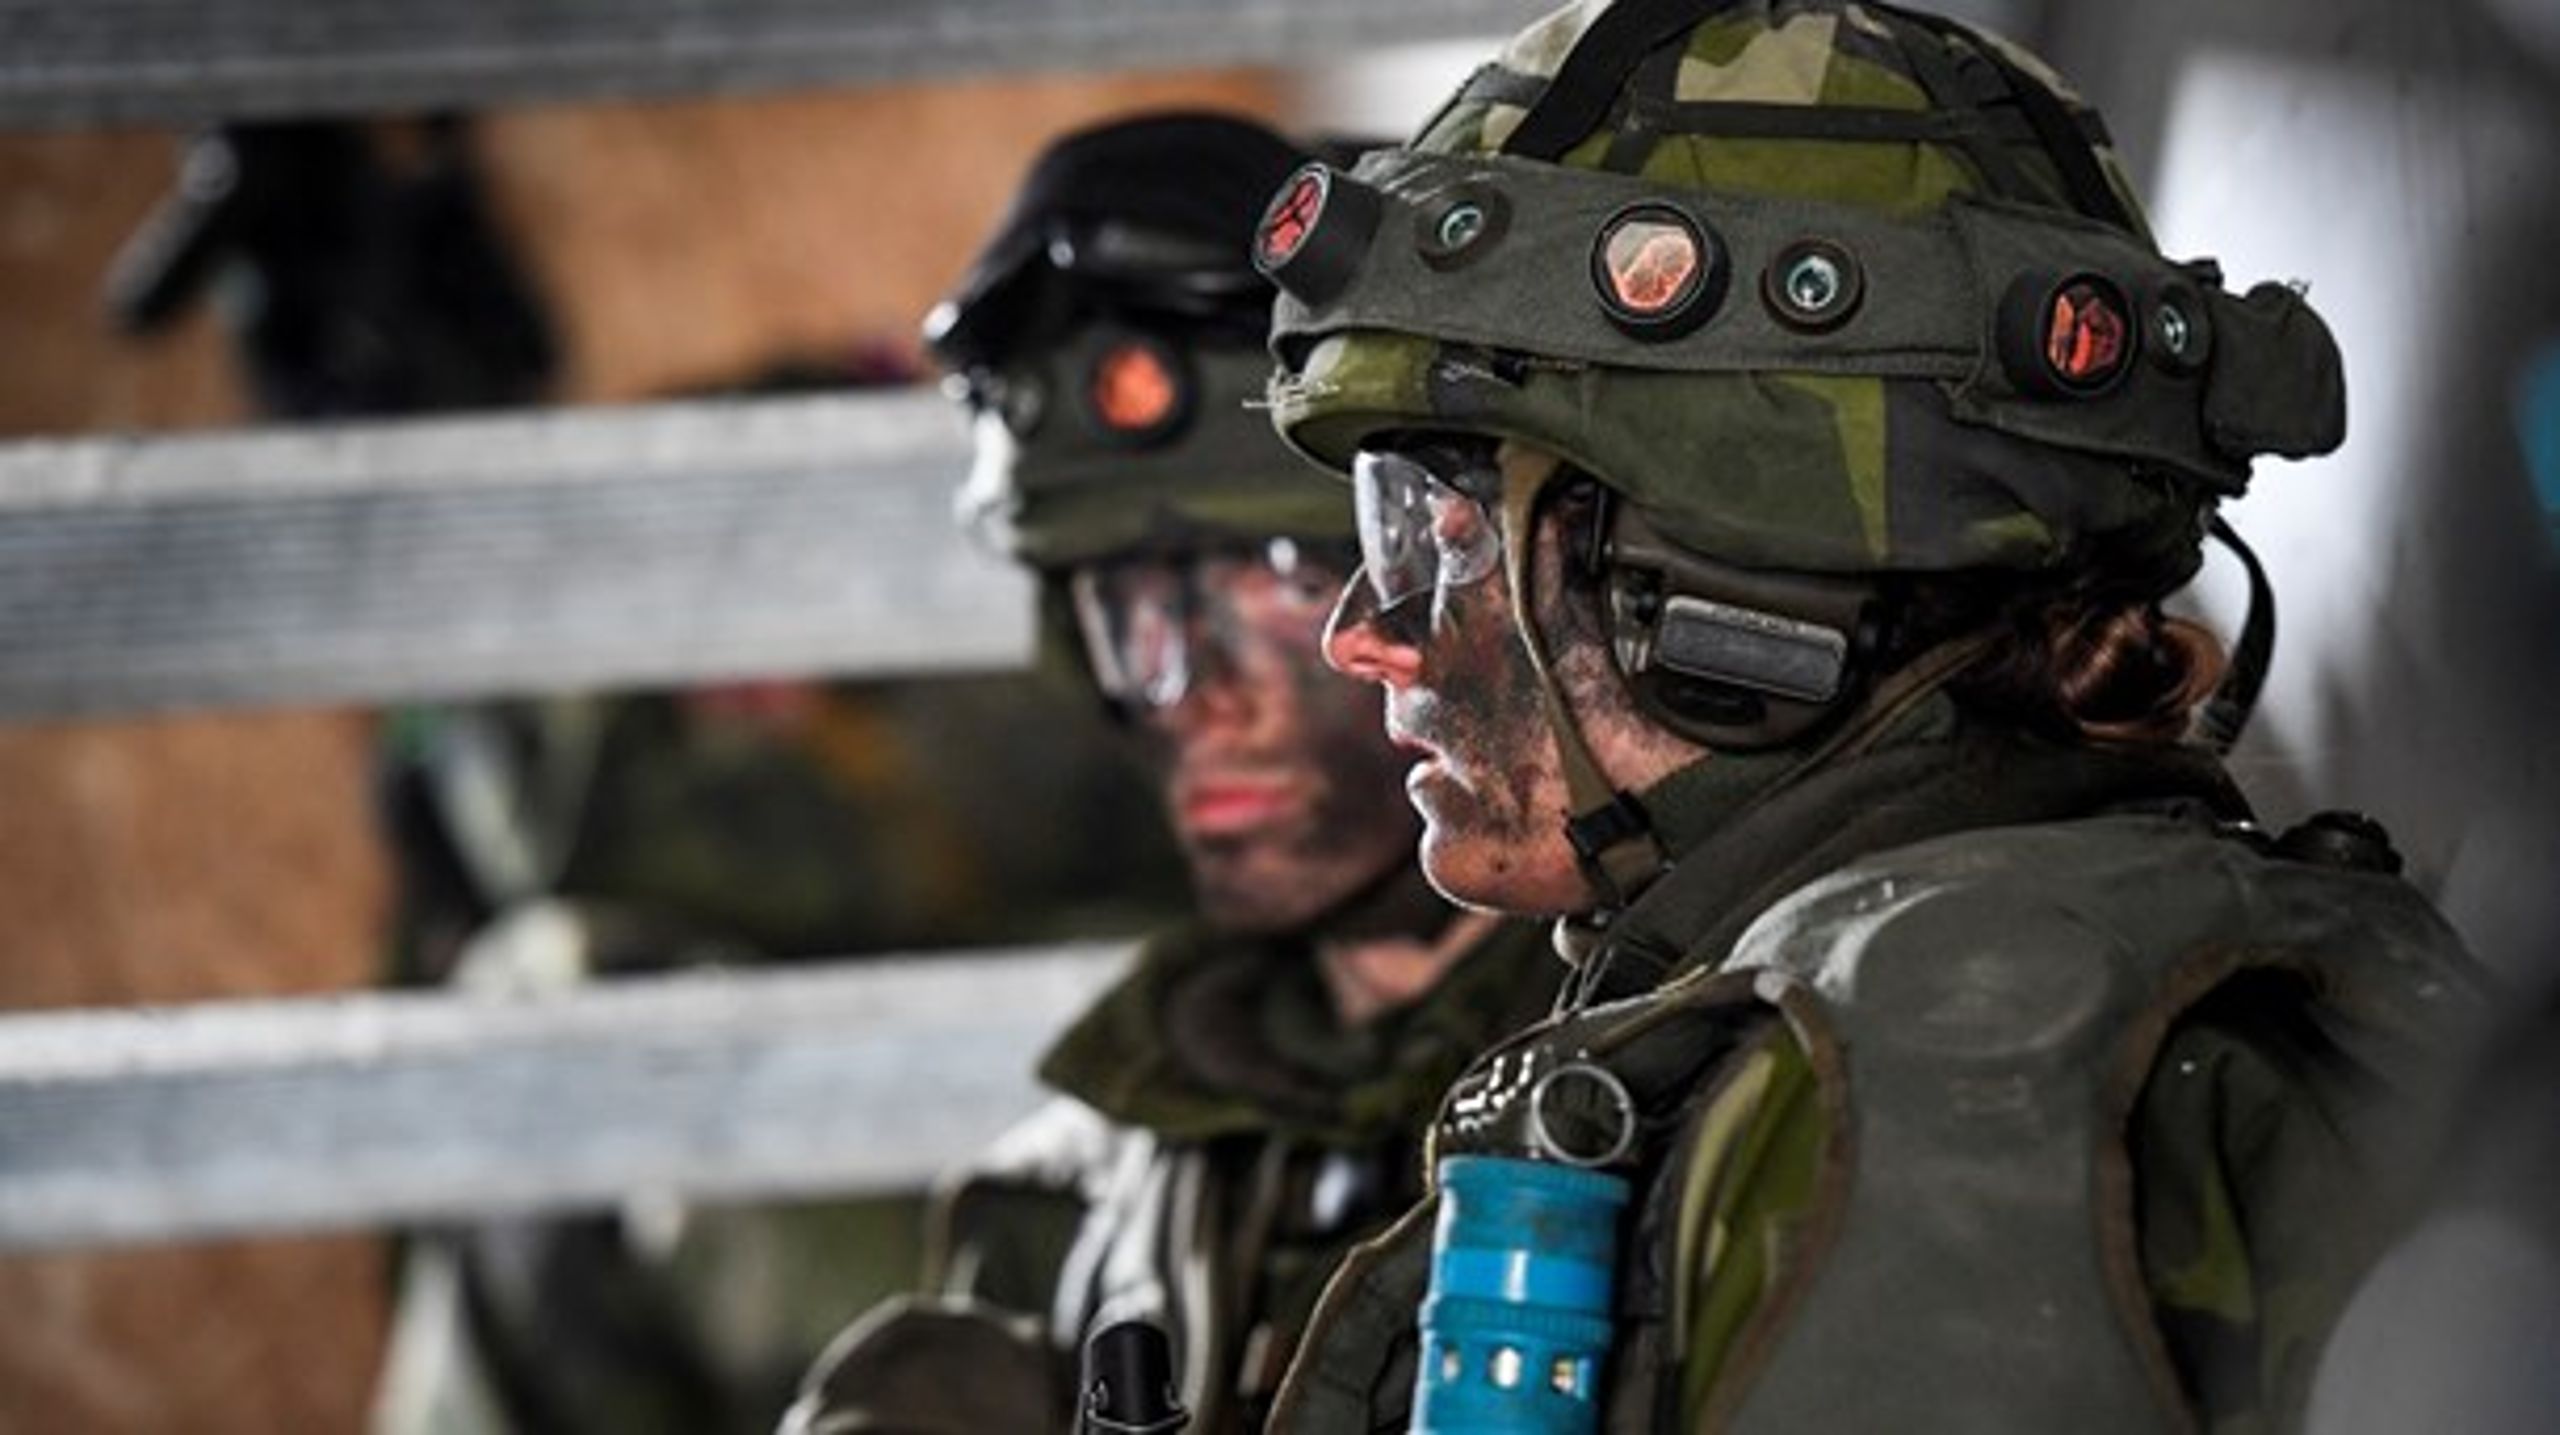 Soldater i stridsutrustning under övning i markstrid i stadsmiljö, Kvarn utanför Borensberg, 2017.